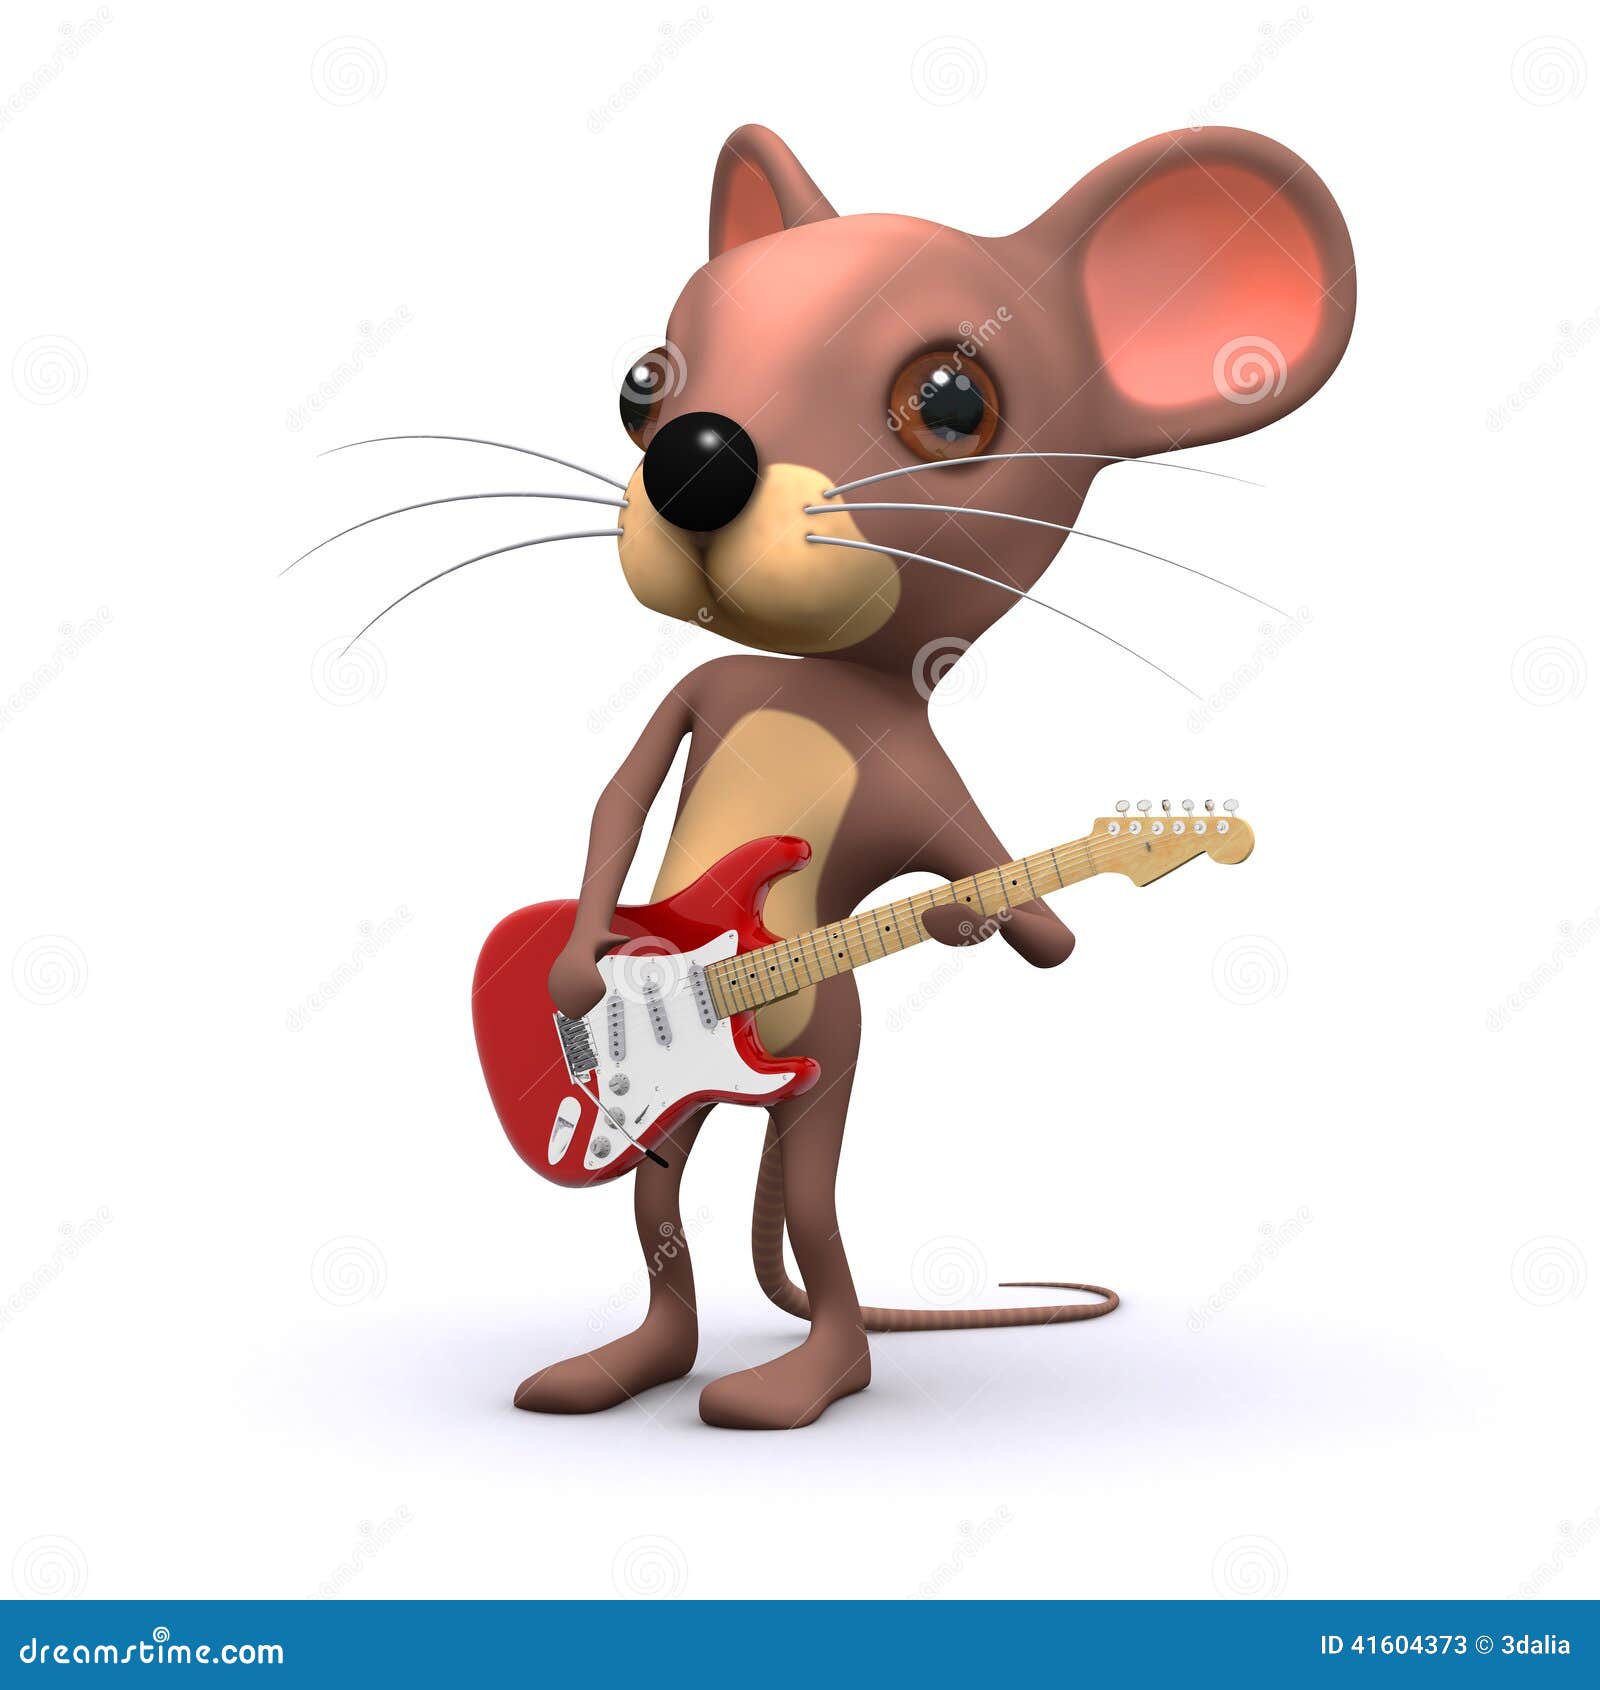 Включи 3 мышей. Мышка с гитарой. Мышонок с гитарой. Мышка с музыкальным инструментом. Крутой мышонок.